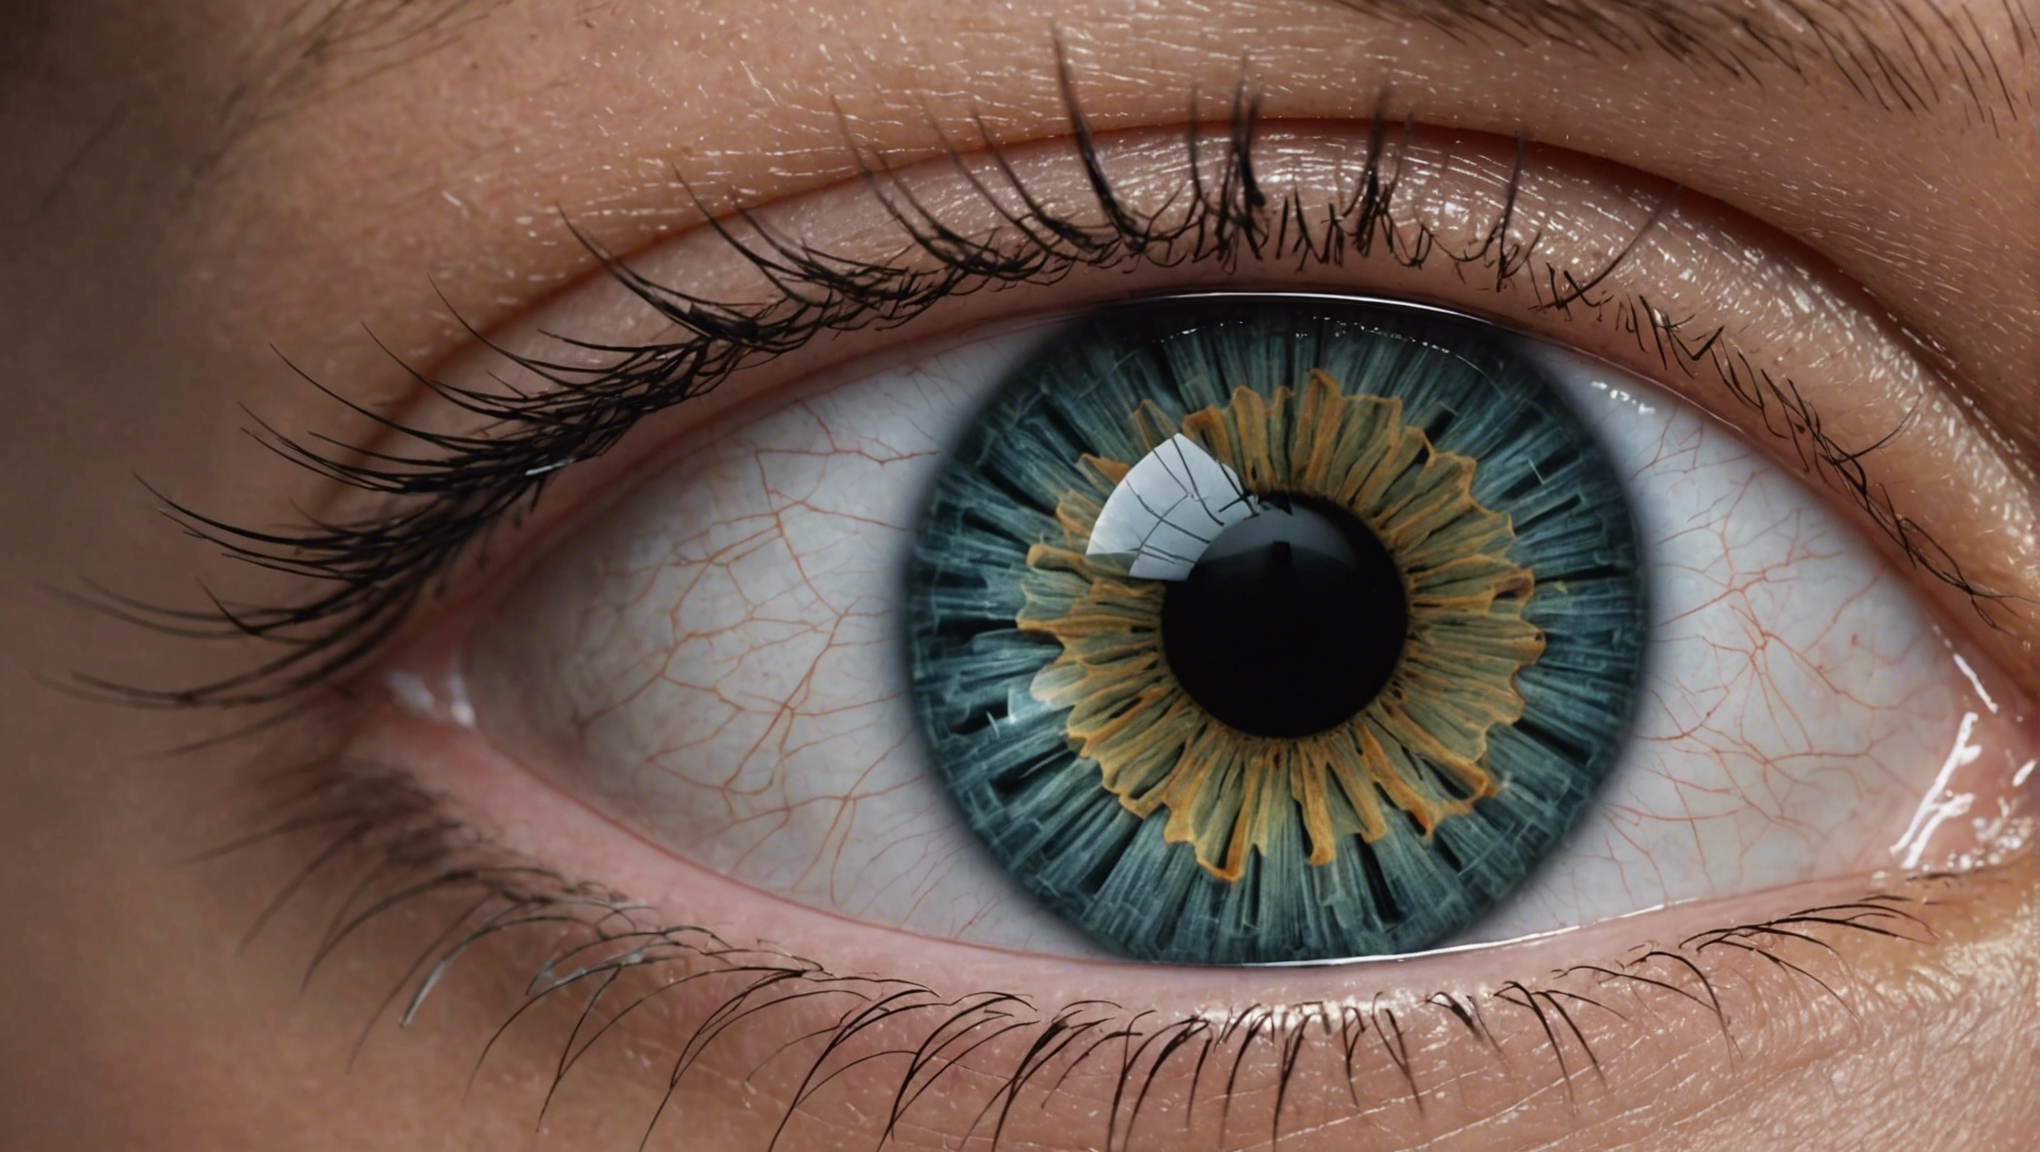 découvrez comment détecter la dégénérescence maculaire et agir efficacement. informations utiles pour prévenir et traiter cette maladie oculaire.